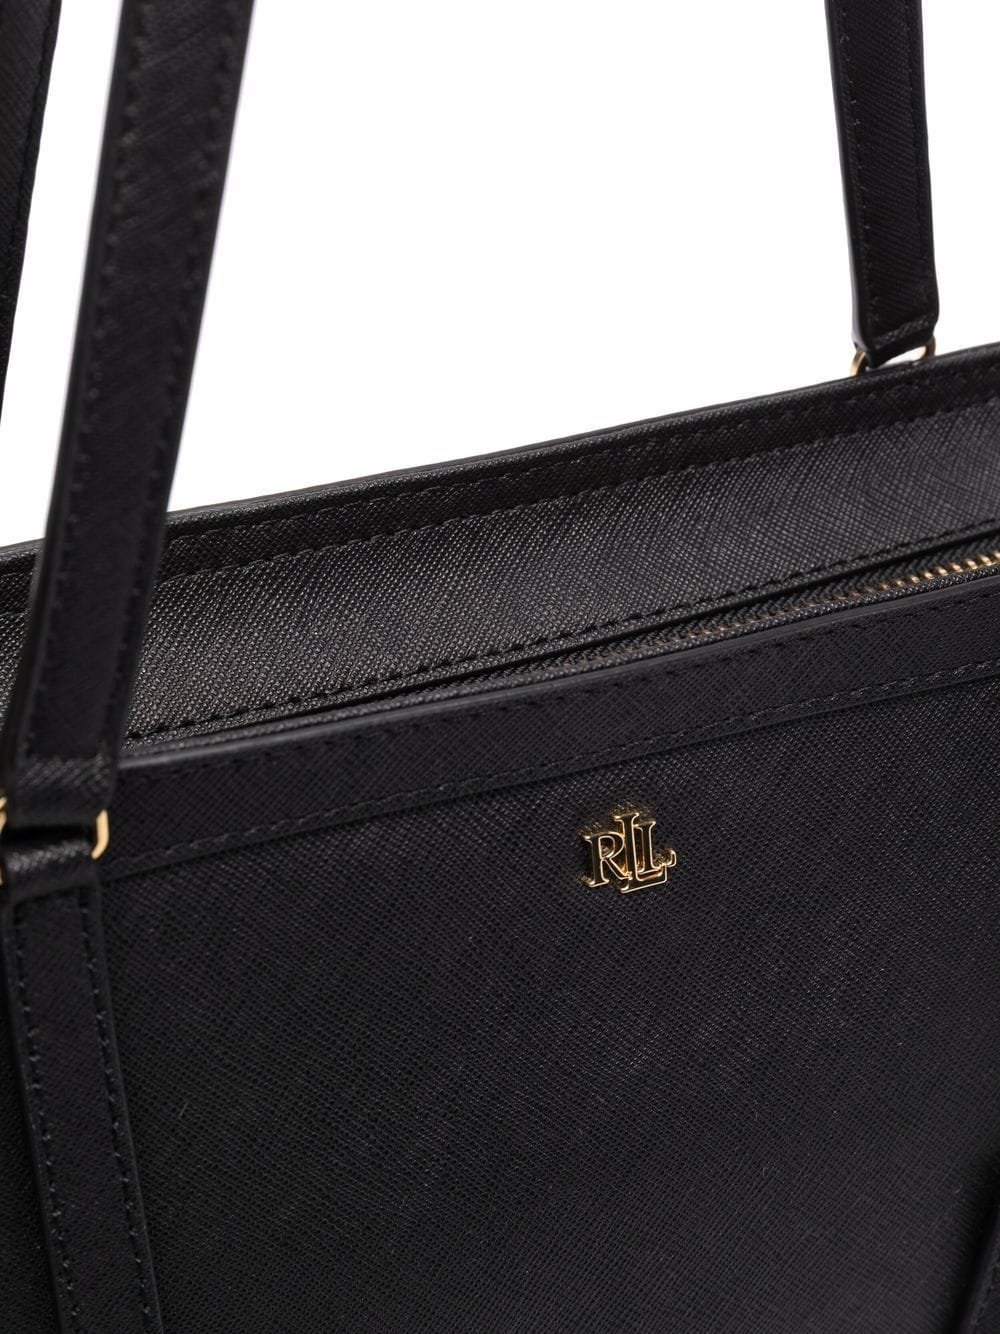 Lauren Ralph Lauren Crosshatch Leather Medium Clare Tote Bag